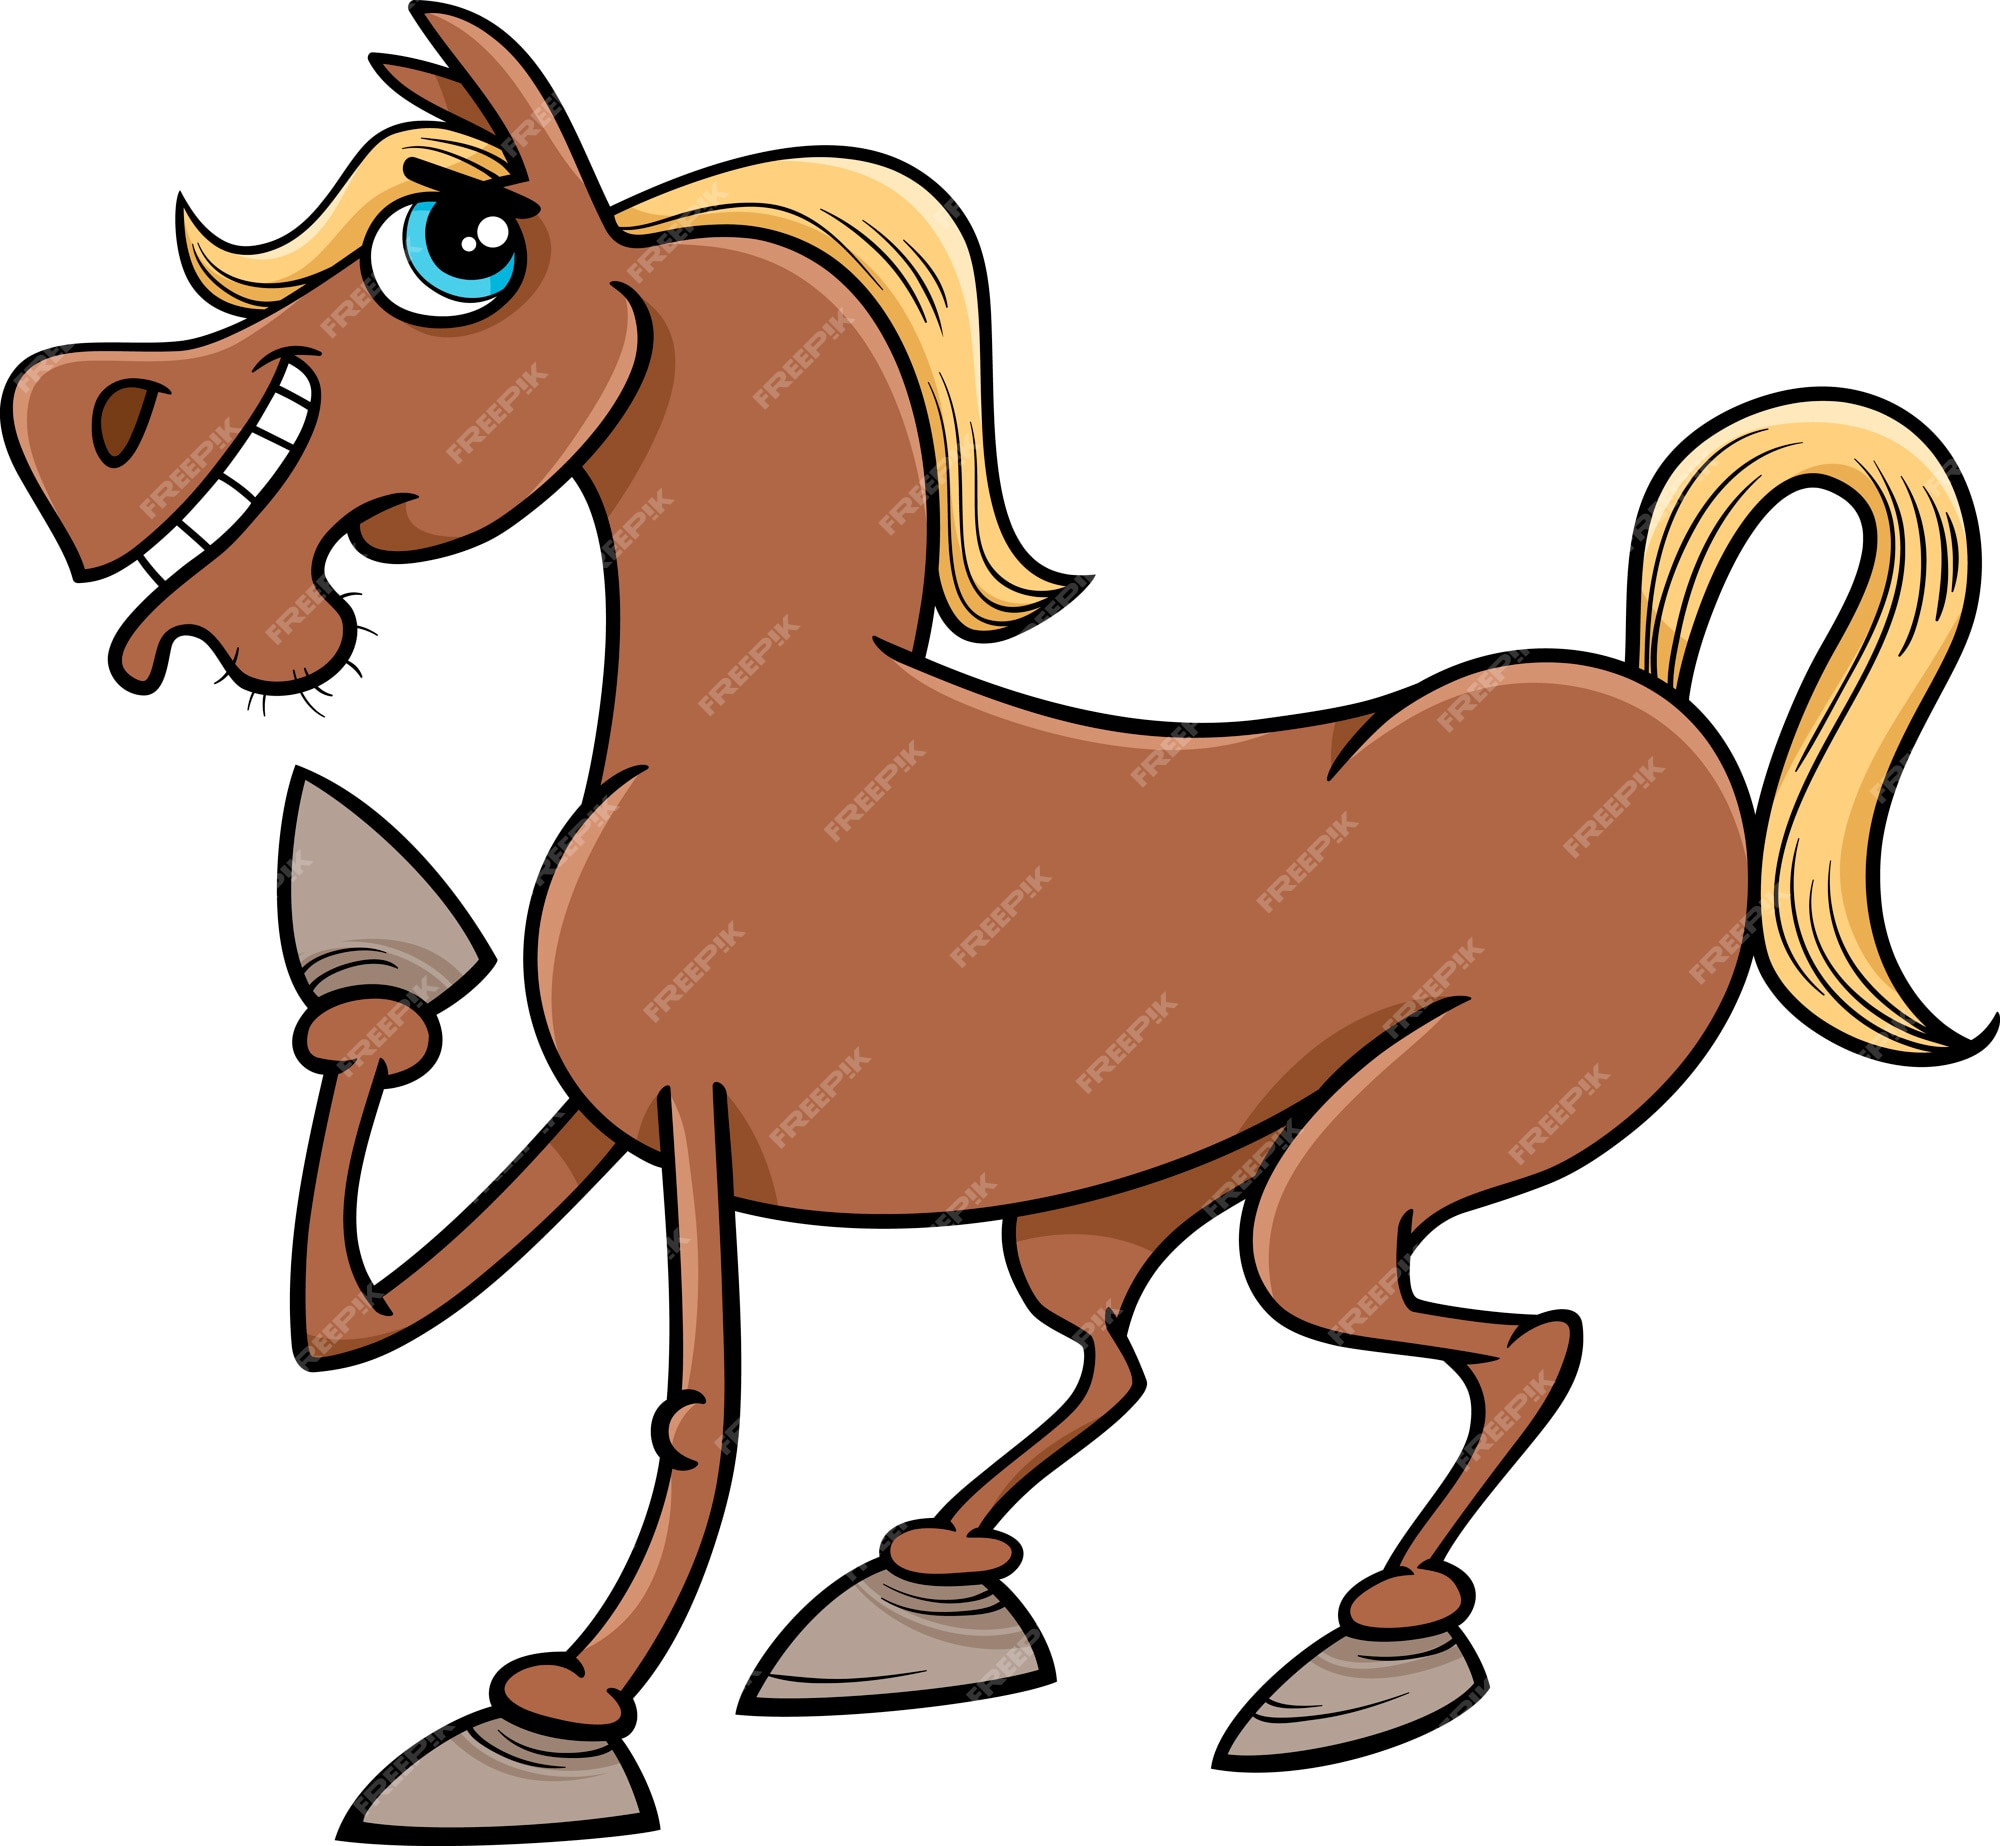 Premium Vector | Farm horse cartoon illustration